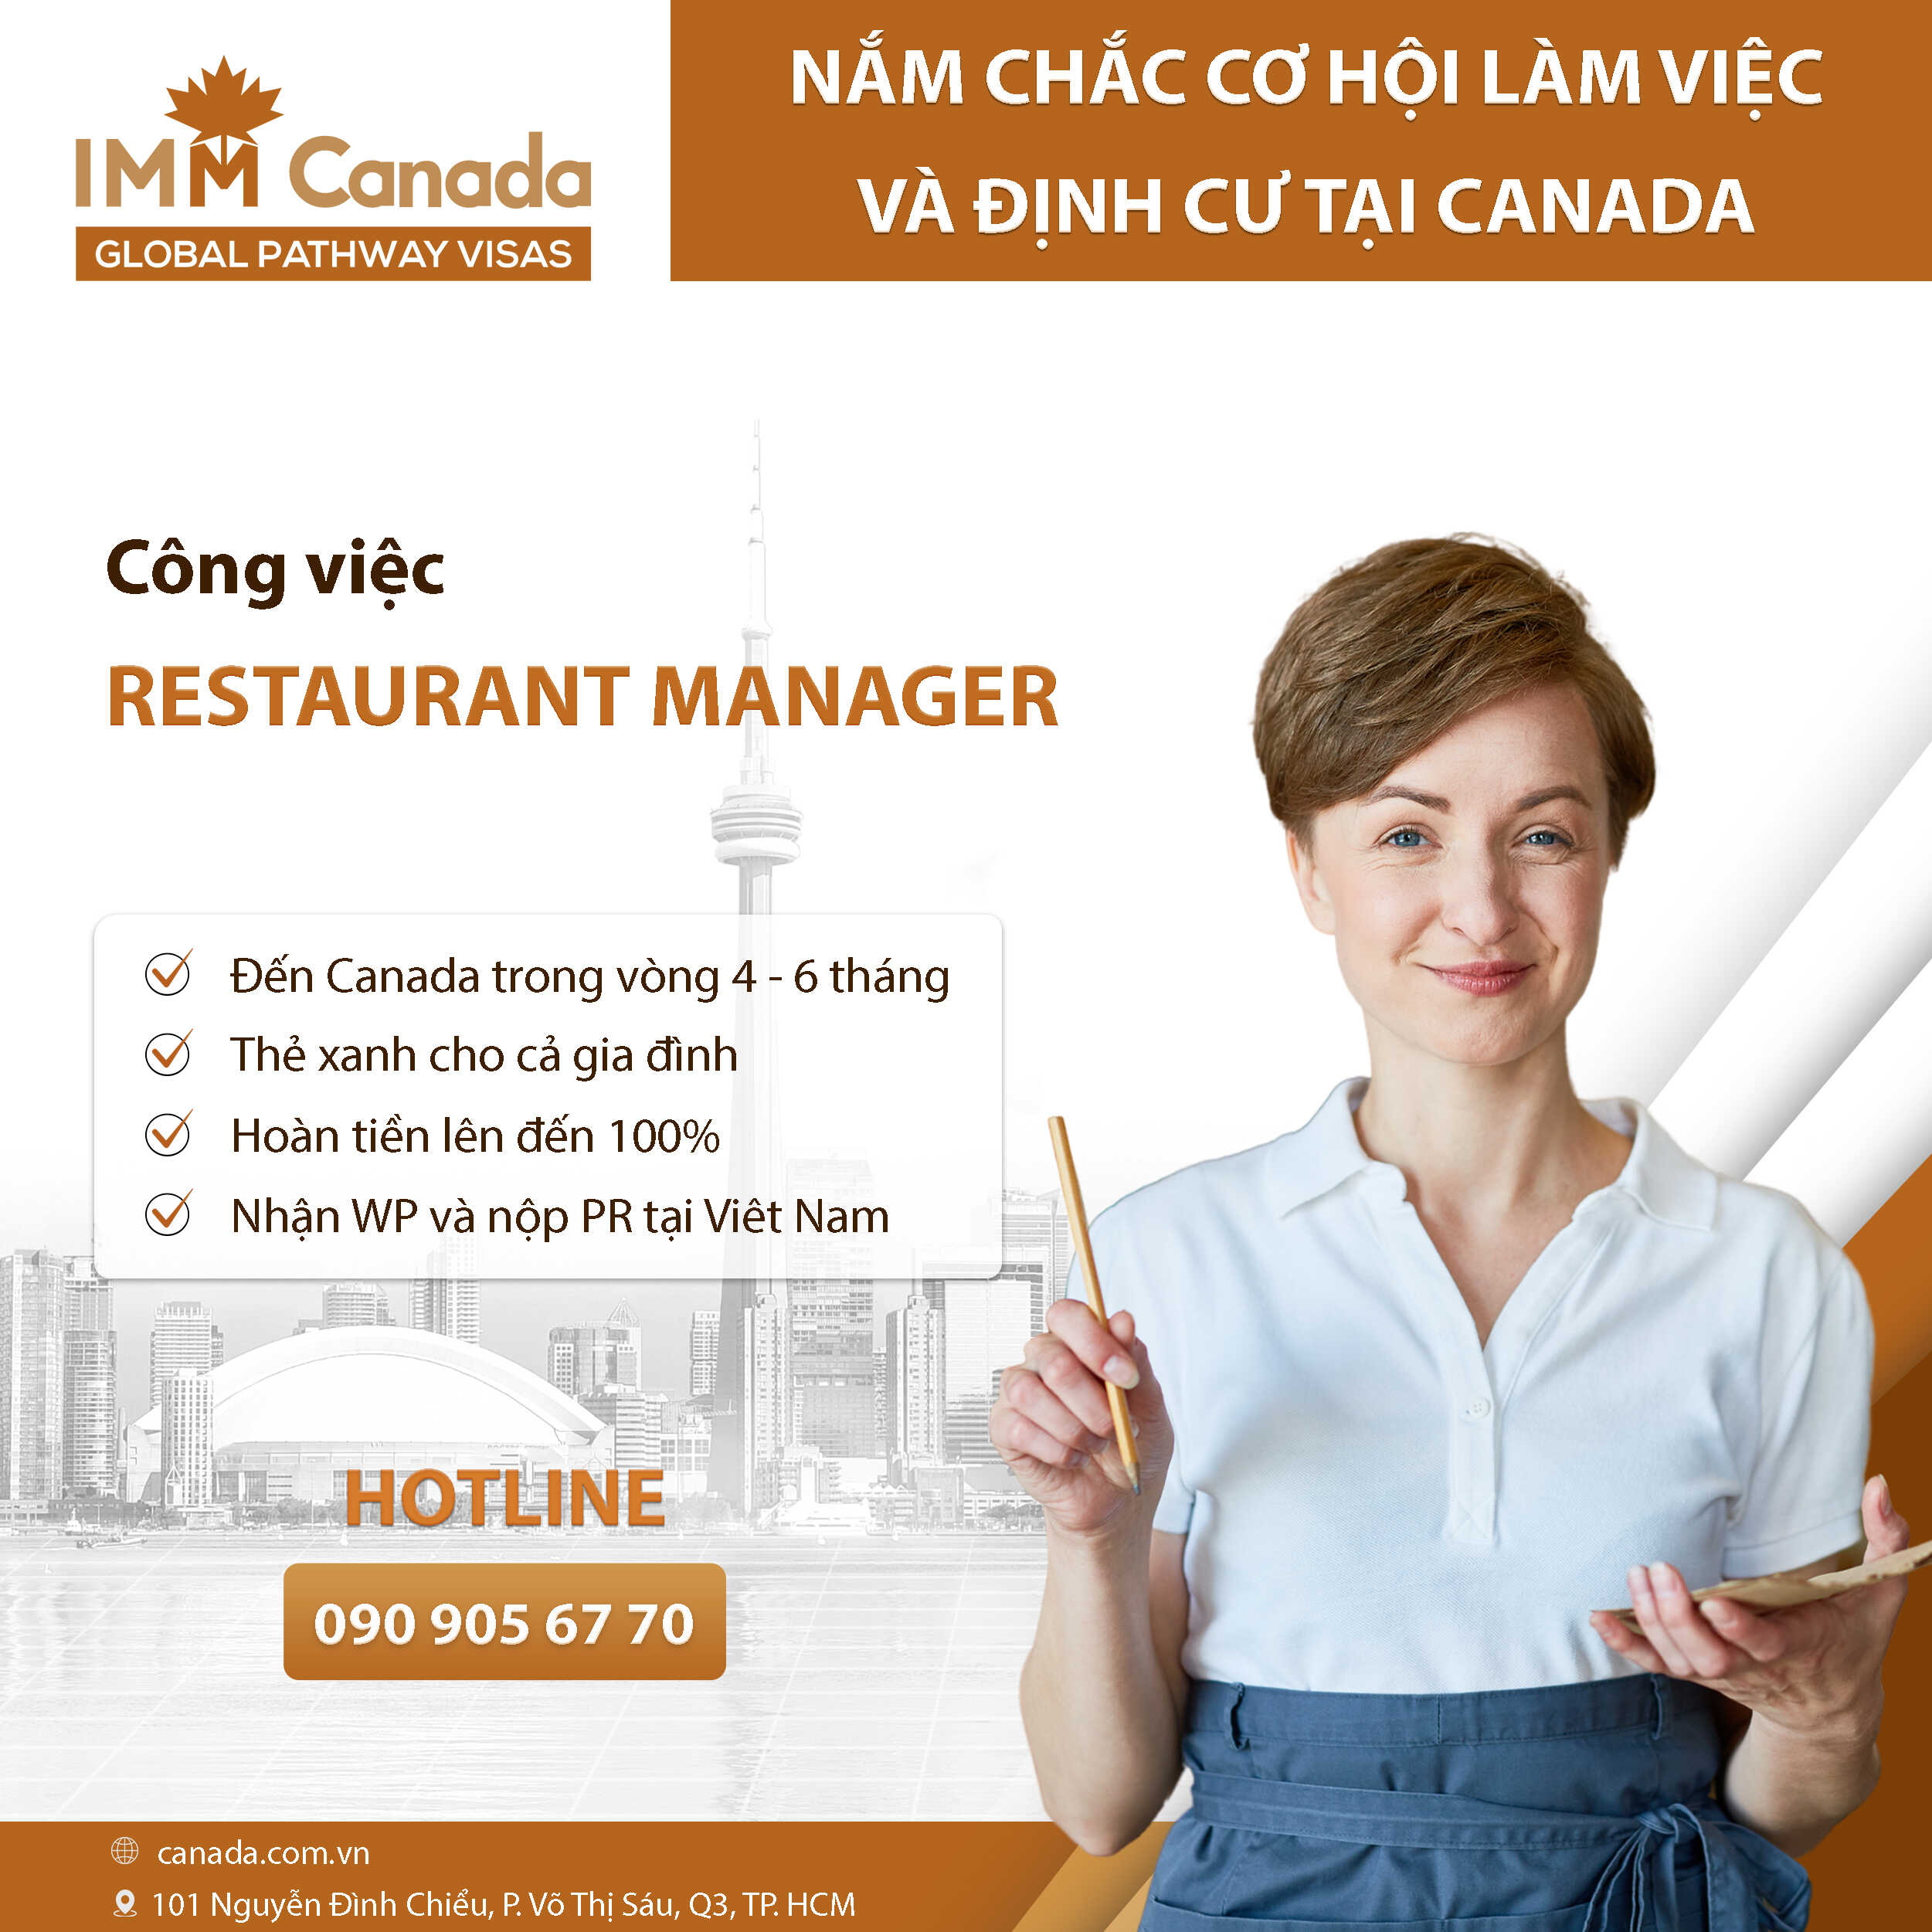 Vị trí Restaurant Manager - Quản lý nhà hàng đang cần tuyển người